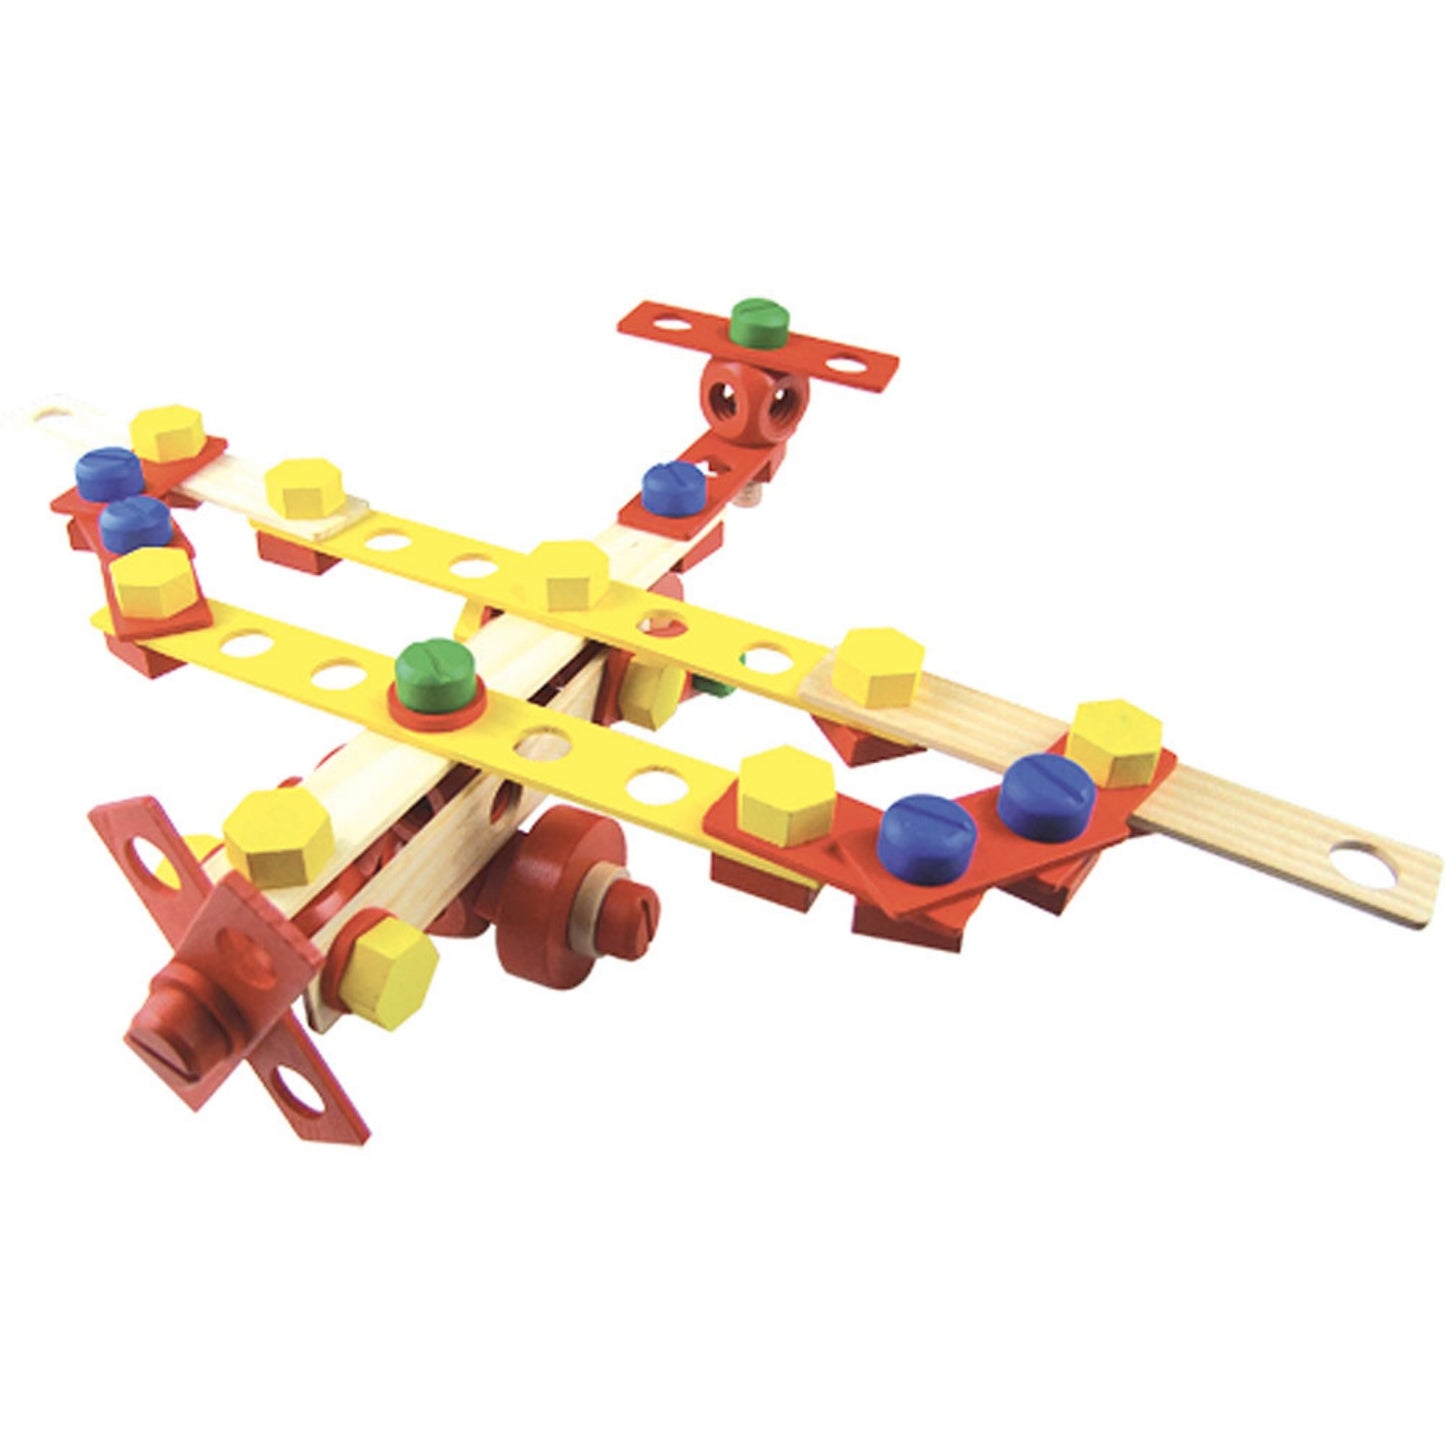 Vilac Wooden Construction Building Set ‘Batibloc’ | Educational Wooden Toy | Plane | BeoVERDE.ie